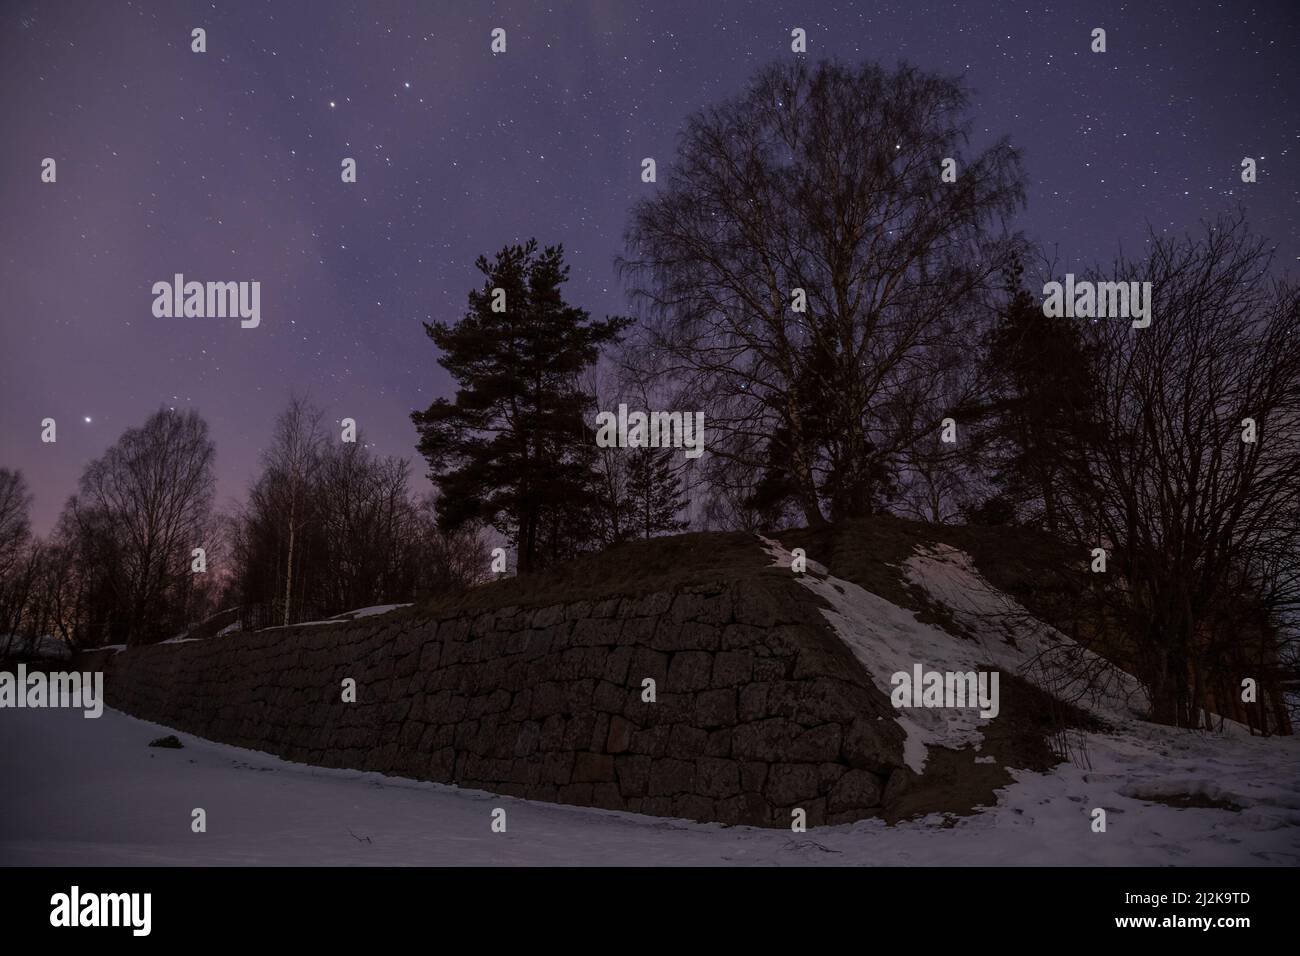 Ruines de la forteresse de Trongzund la nuit sous le ciel étoilé. Vysotsk, région de Leningrad, Russie Banque D'Images